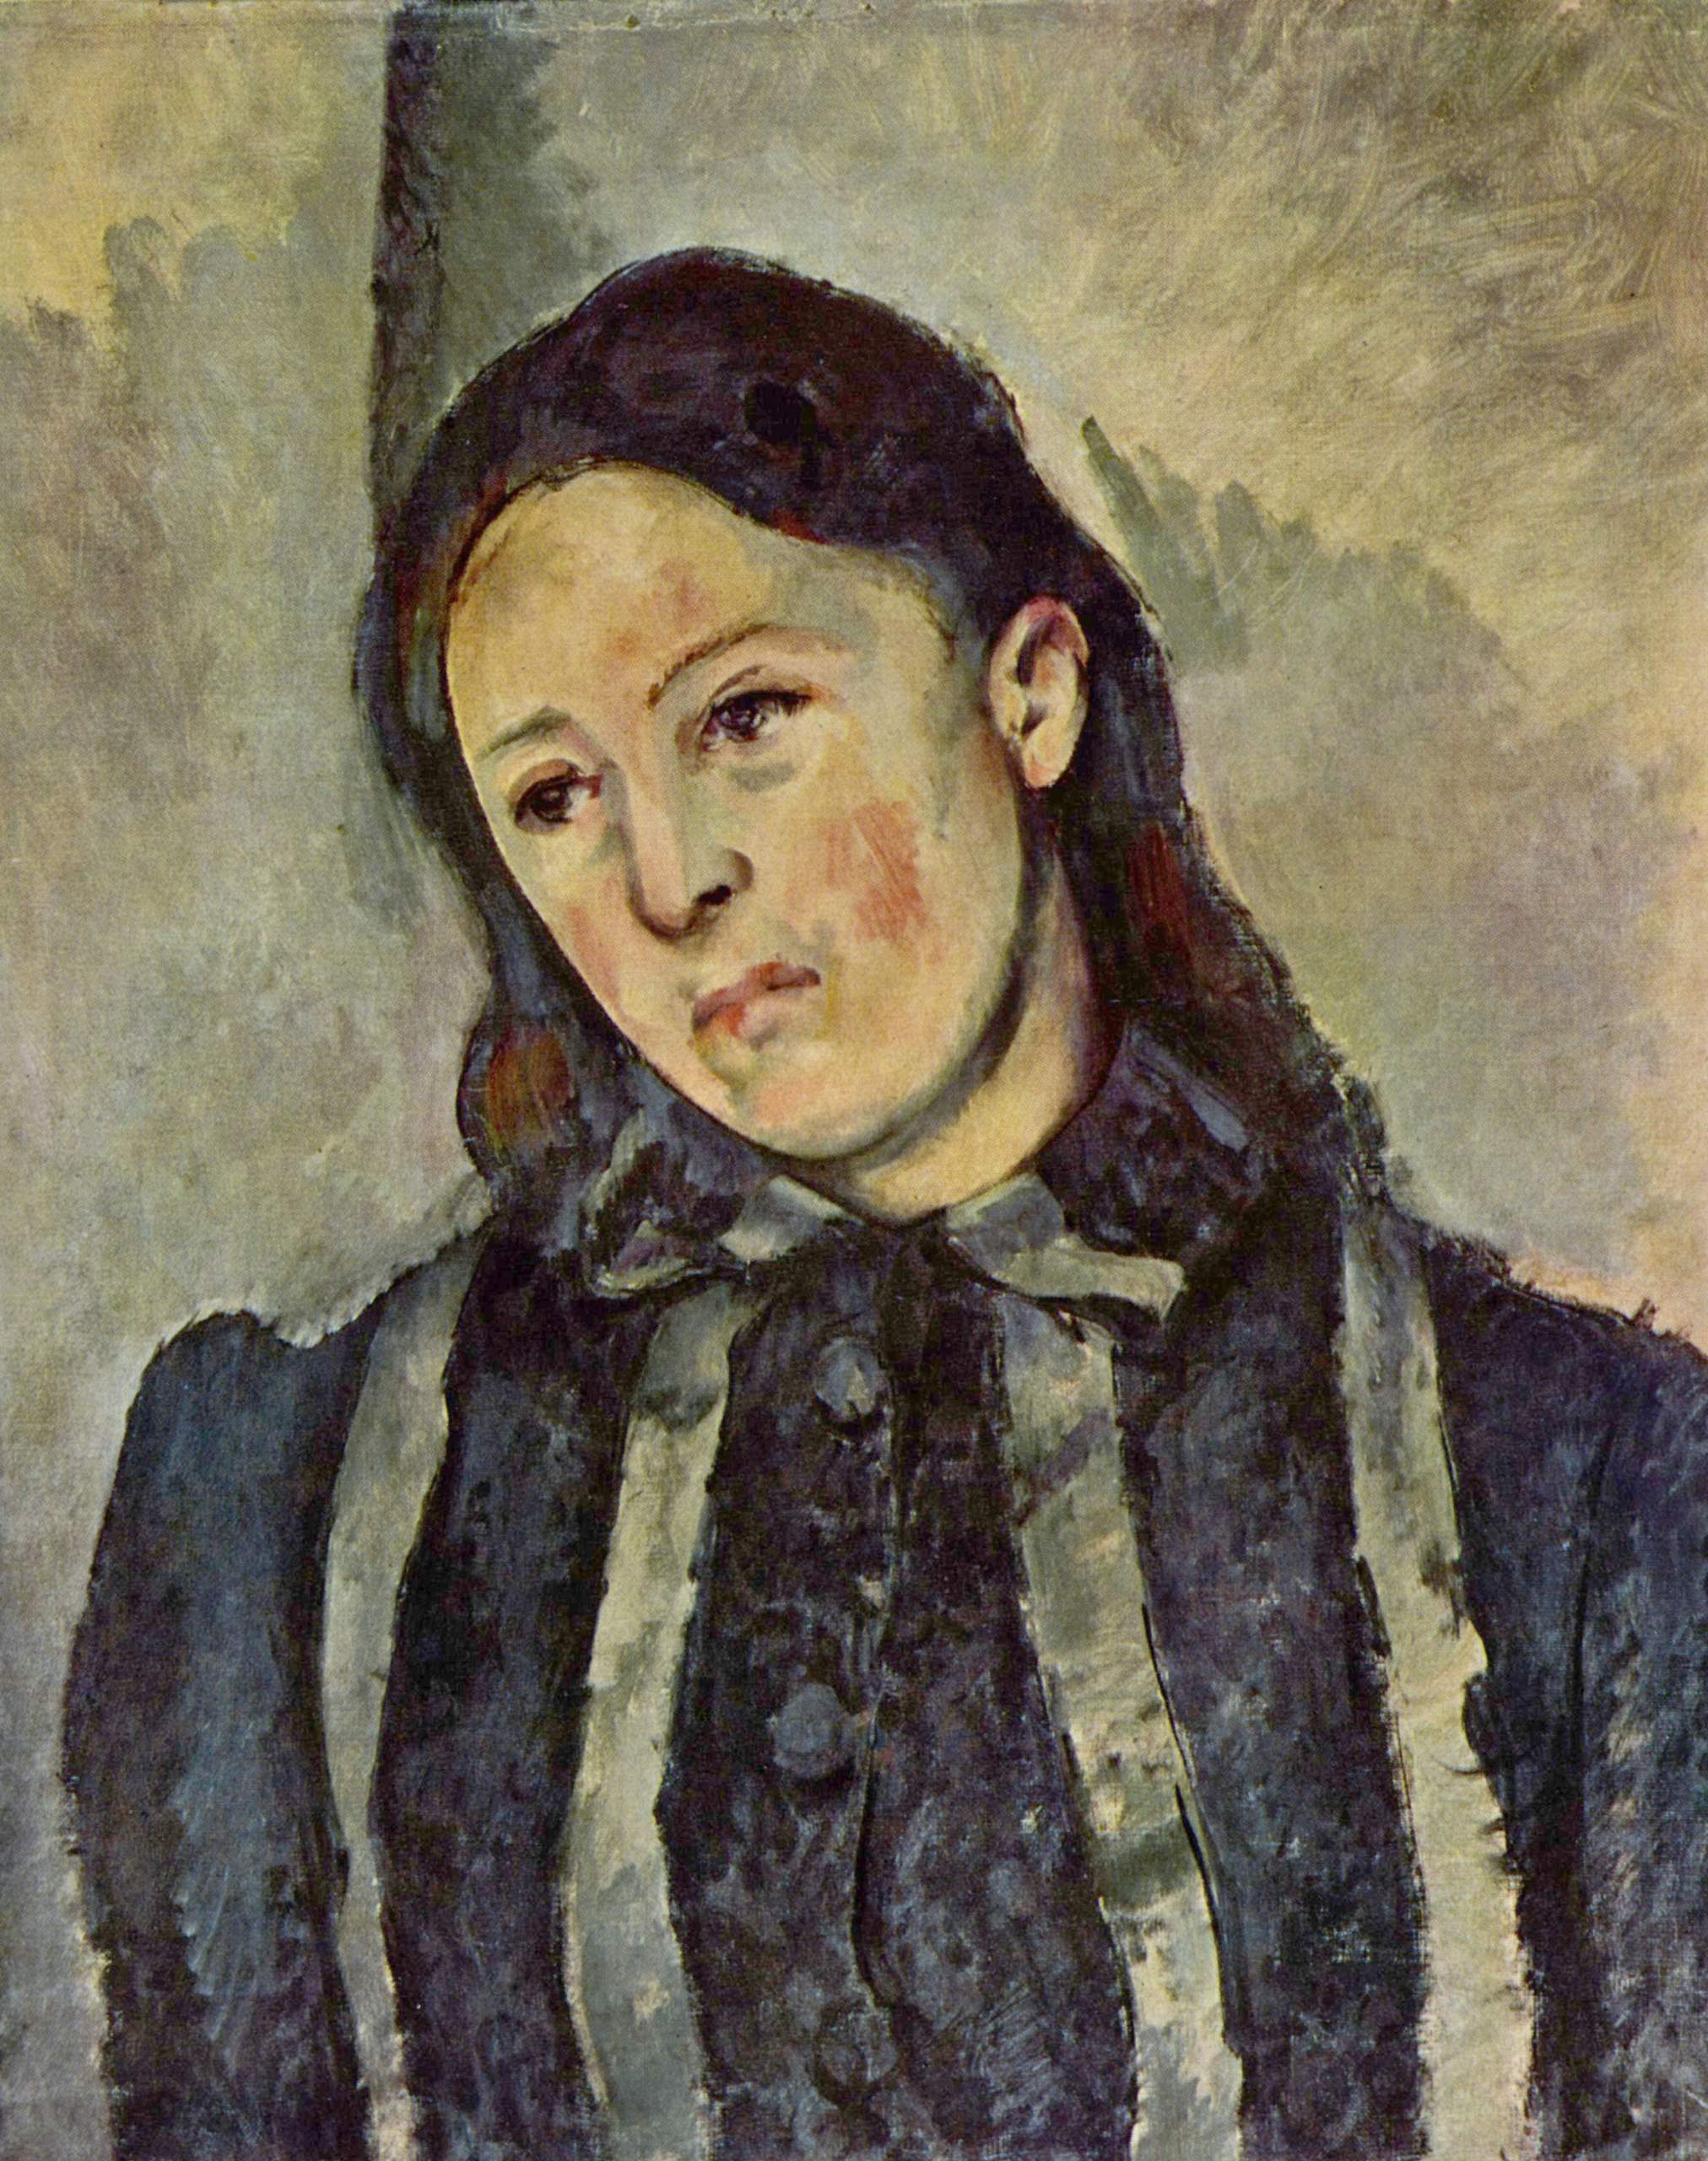 Ritratto di Madame Cézanne con capelli sciolti by Paul Cézanne - 1882-1887 - 62 × 51 cm collezione privata